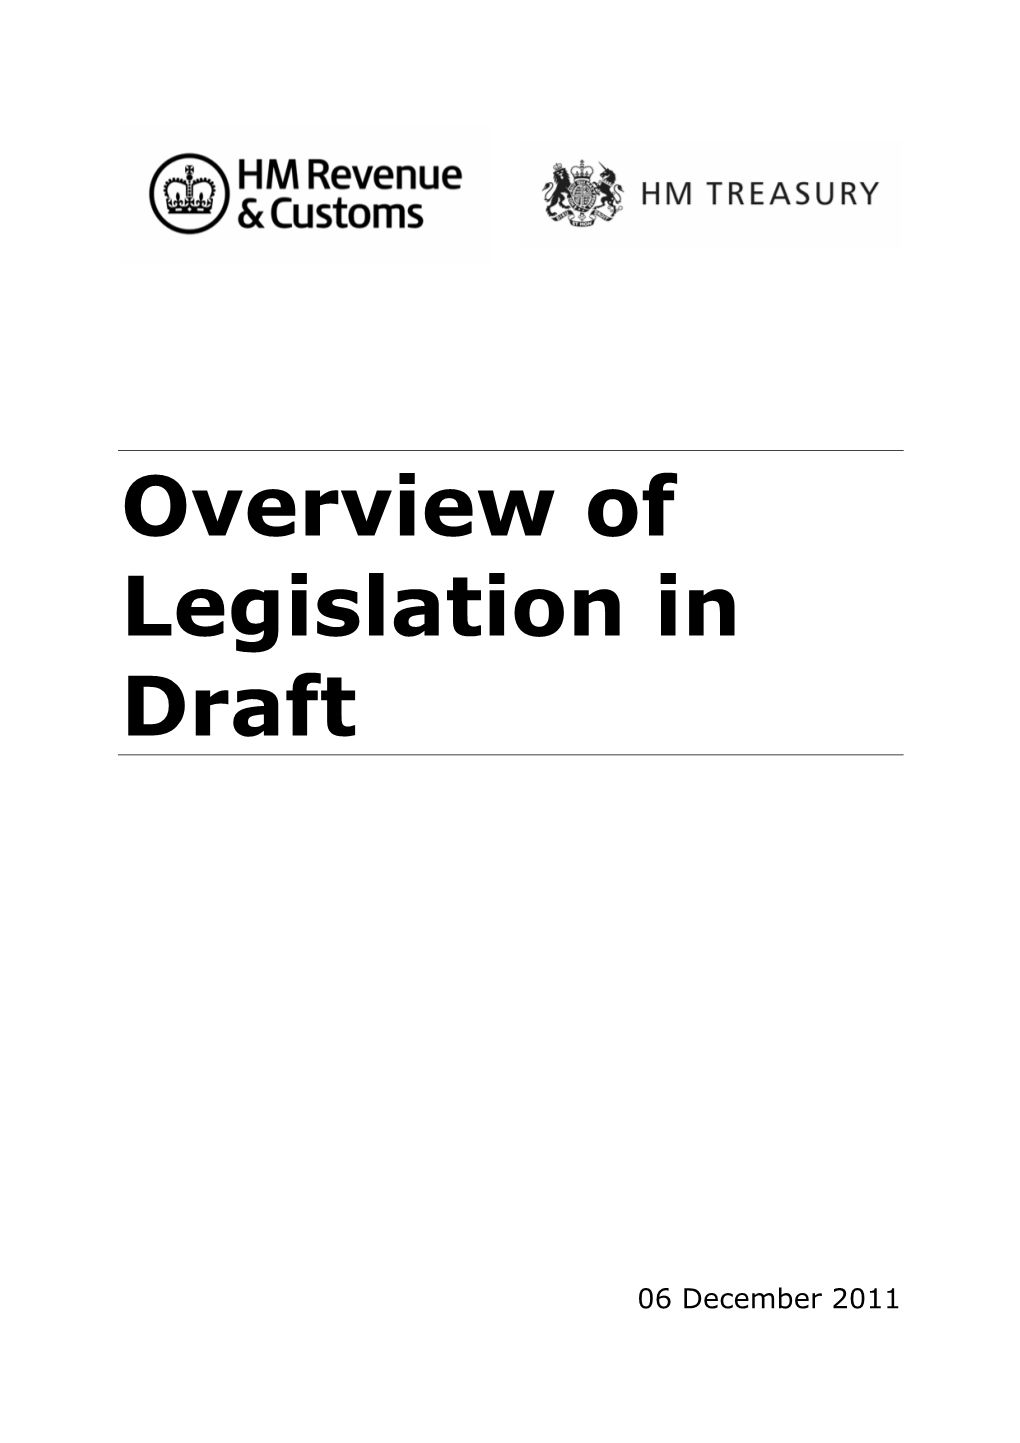 Overview of Draft Legislation for Finance Bill 2012